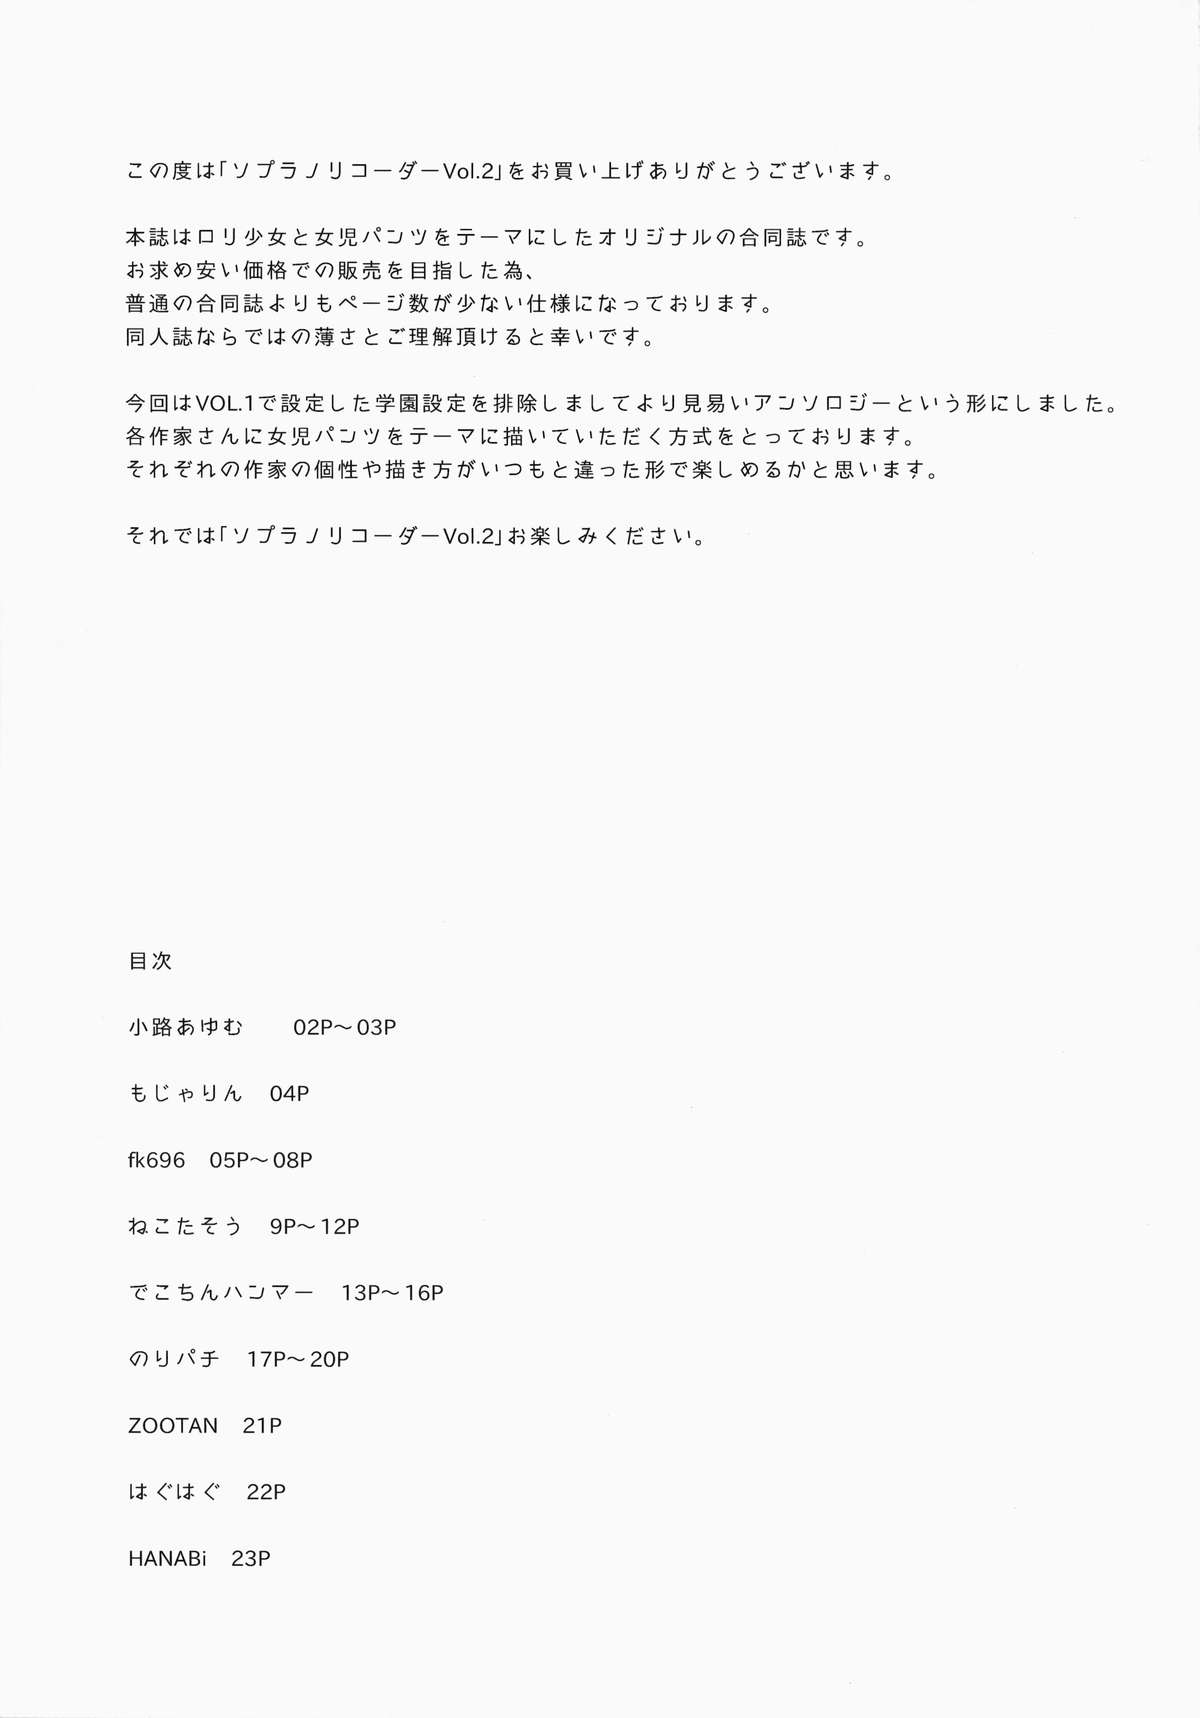 (COMIC1☆8) [ソプラノリコーダー (でこちんハンマー、fk696、小路あゆむ)] ソプラノリコーダー Vol.2